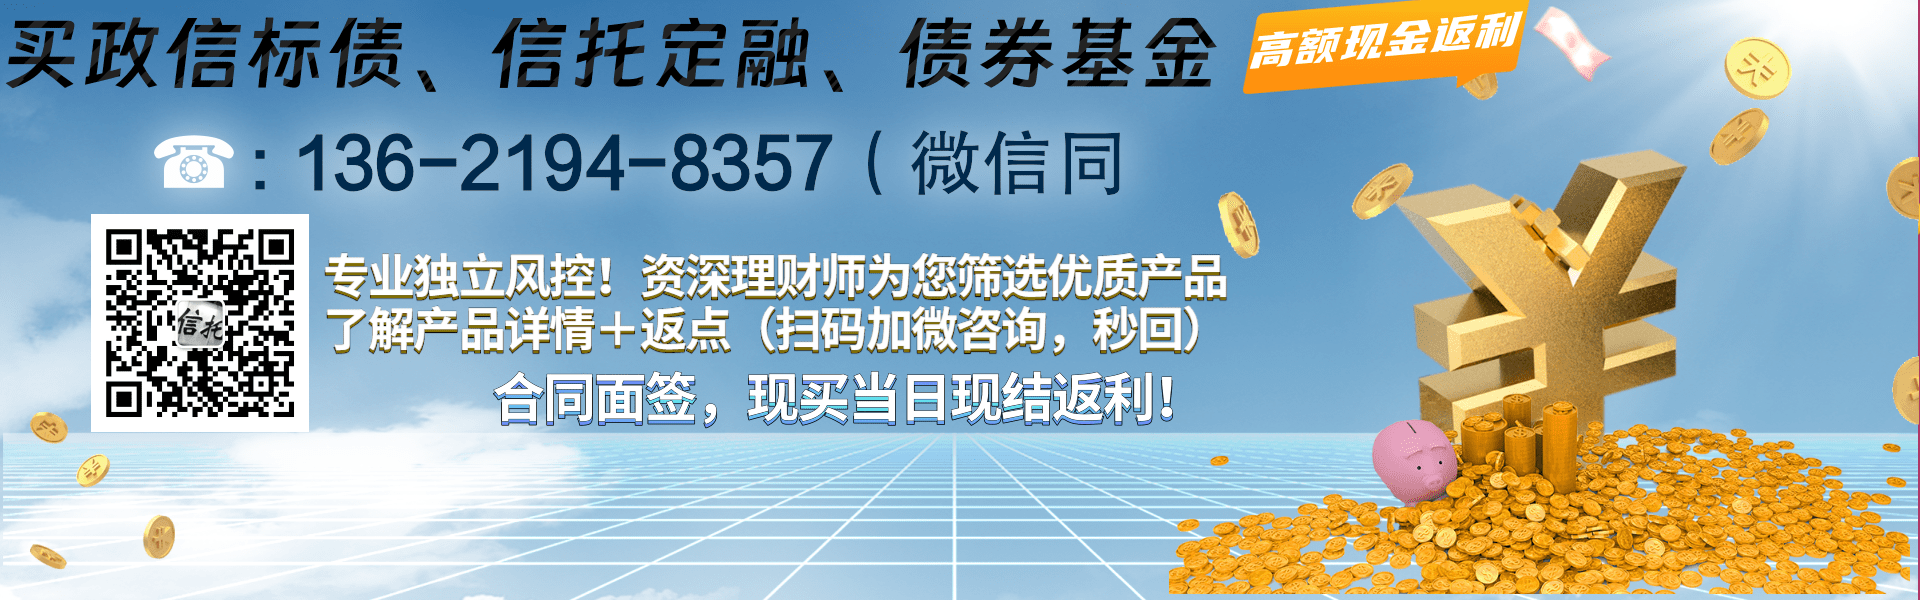 山西信托-永保39号成都青白江城投债集合资金信托计划